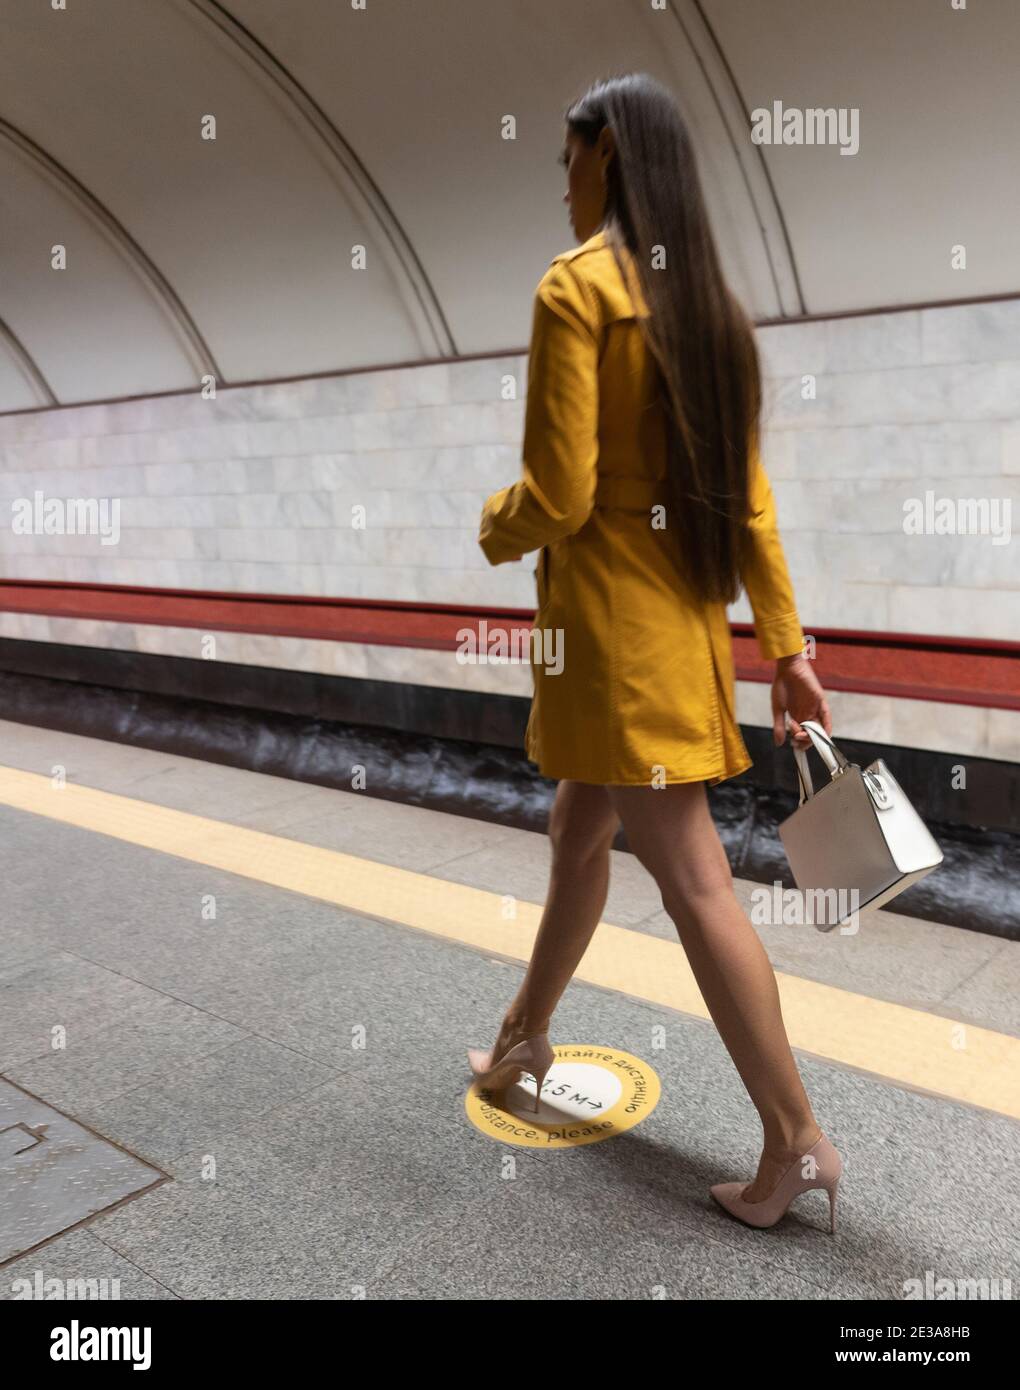 Vista posteriore di una passeggiata sulla piattaforma della metropolitana bello giovane ragazza con lunghe e belle gambe che indossa un cappotto di primavera giallo e una borsa bianca o borsetta dentro Foto Stock